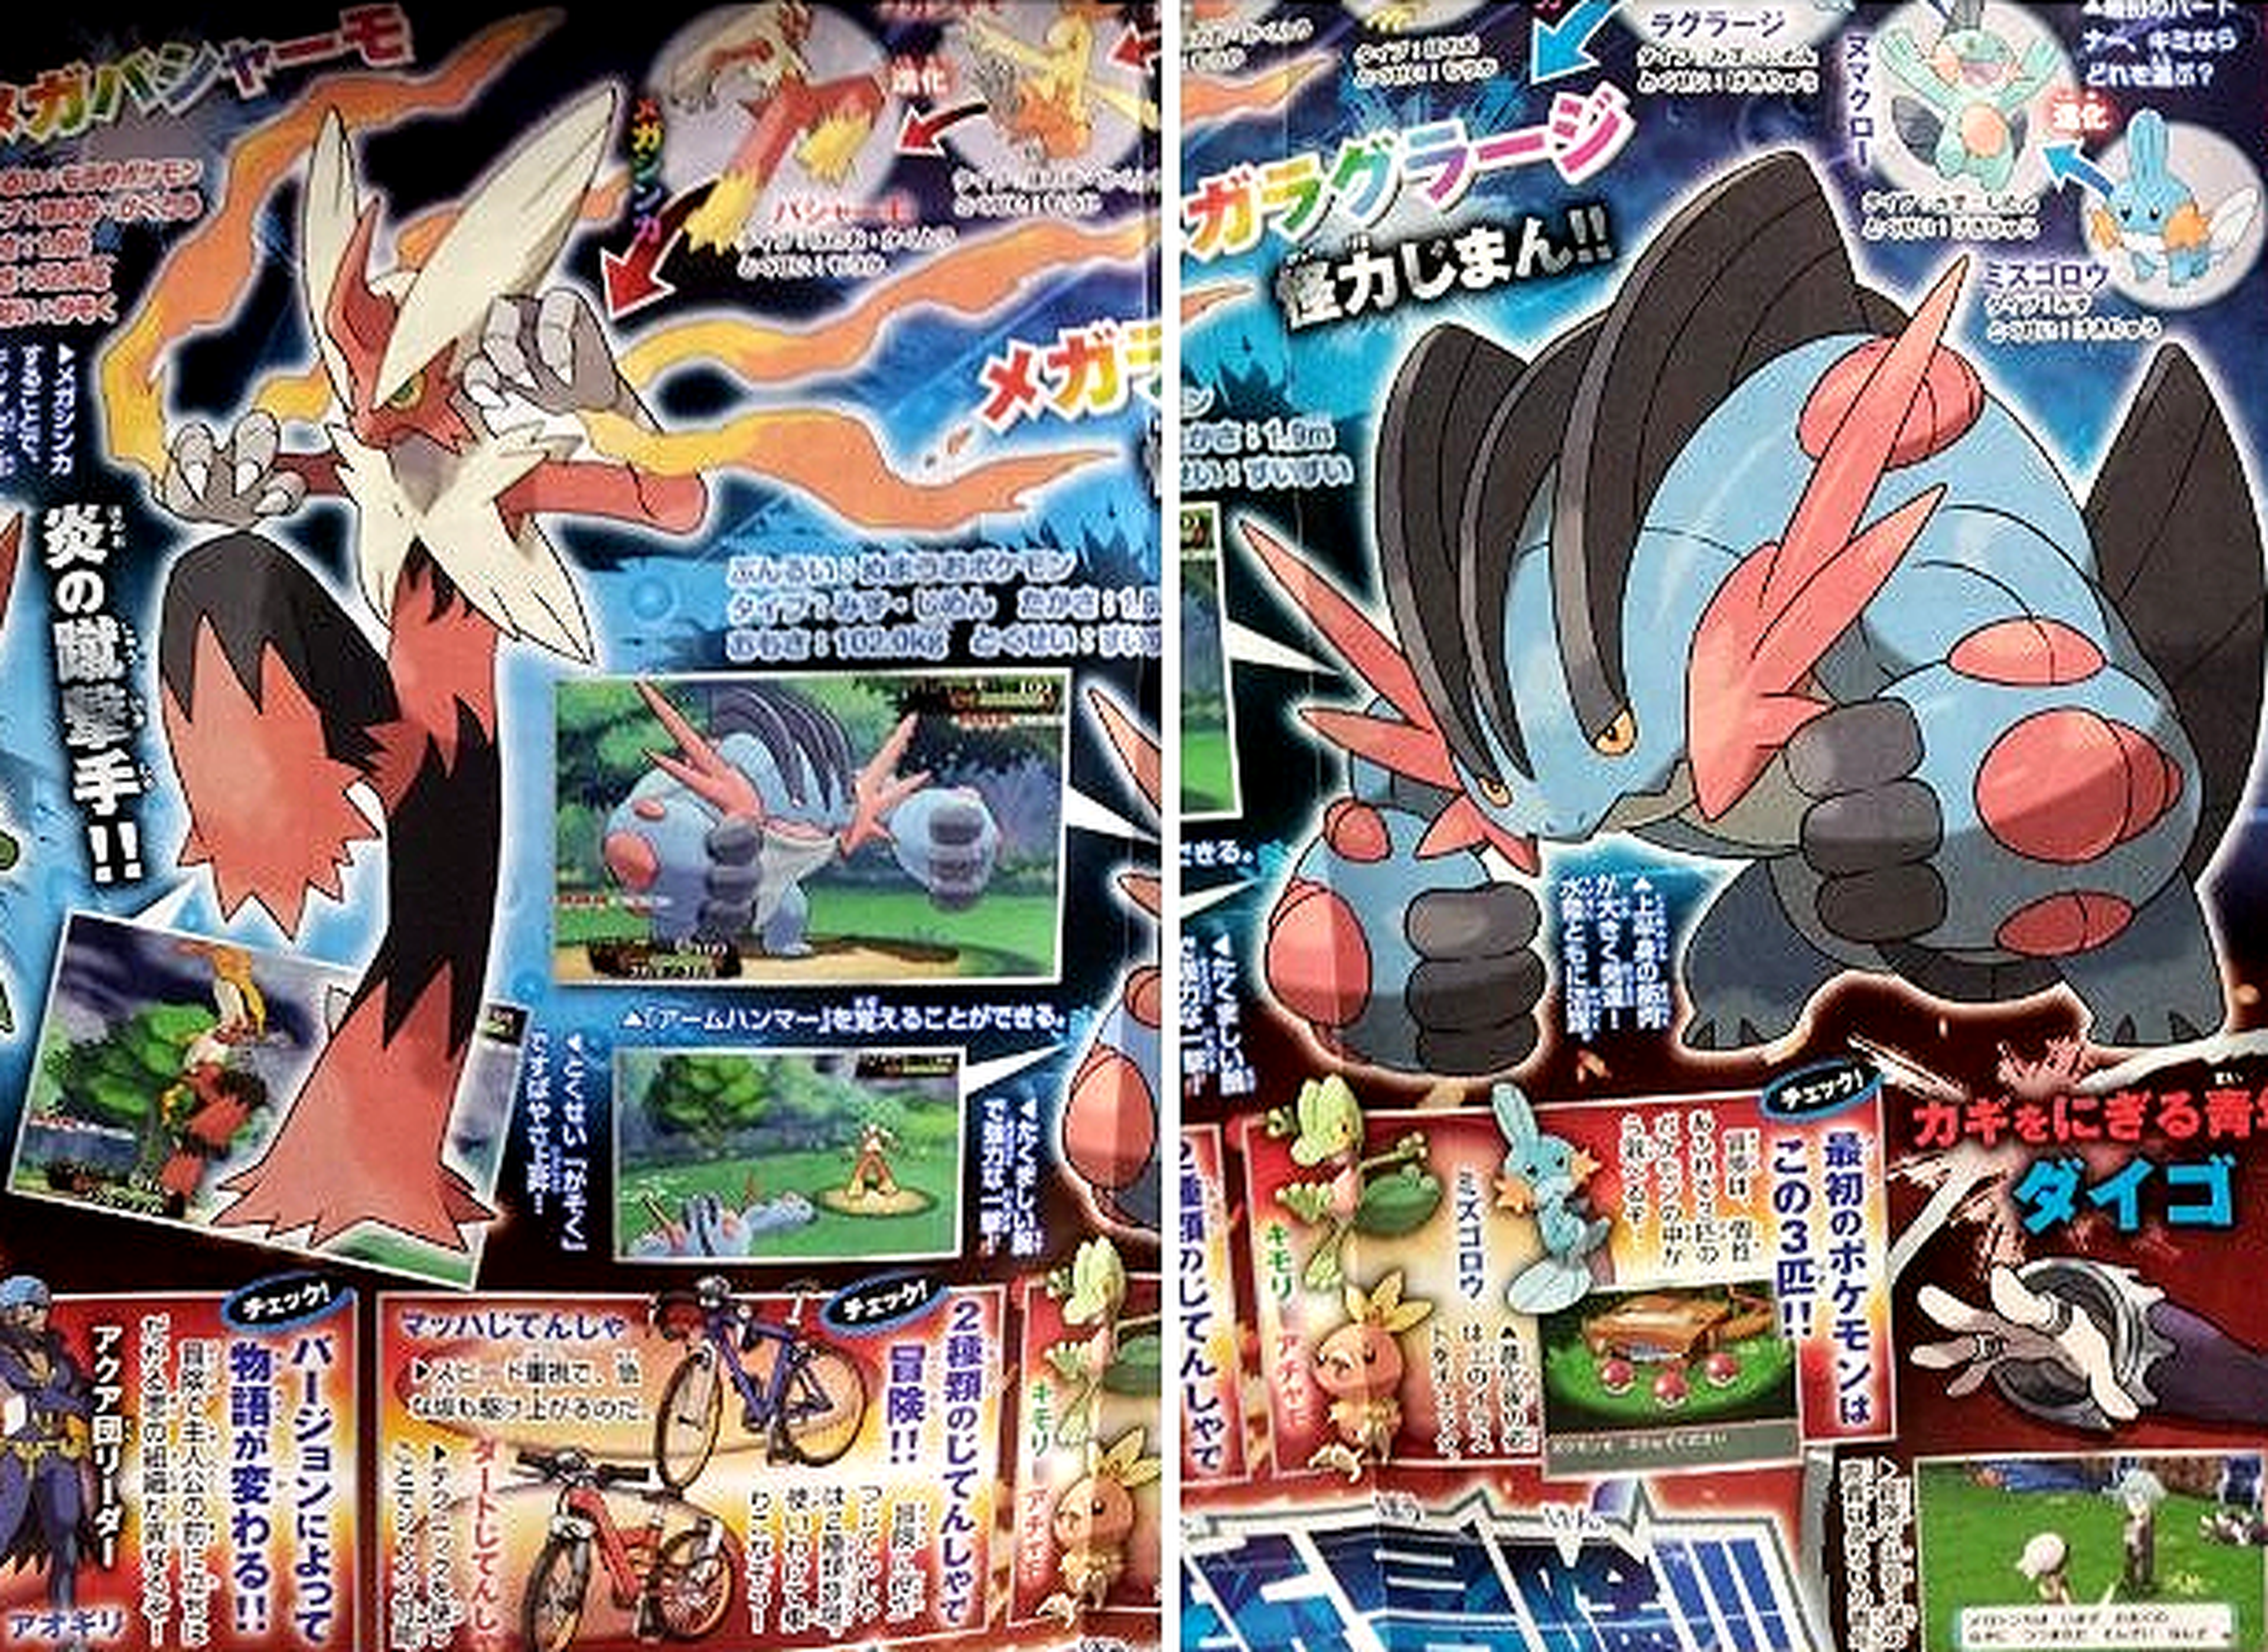 Reveladas tres nuevas megaevoluciones de Pokémon Rubí Omega y Zafiro Alfa